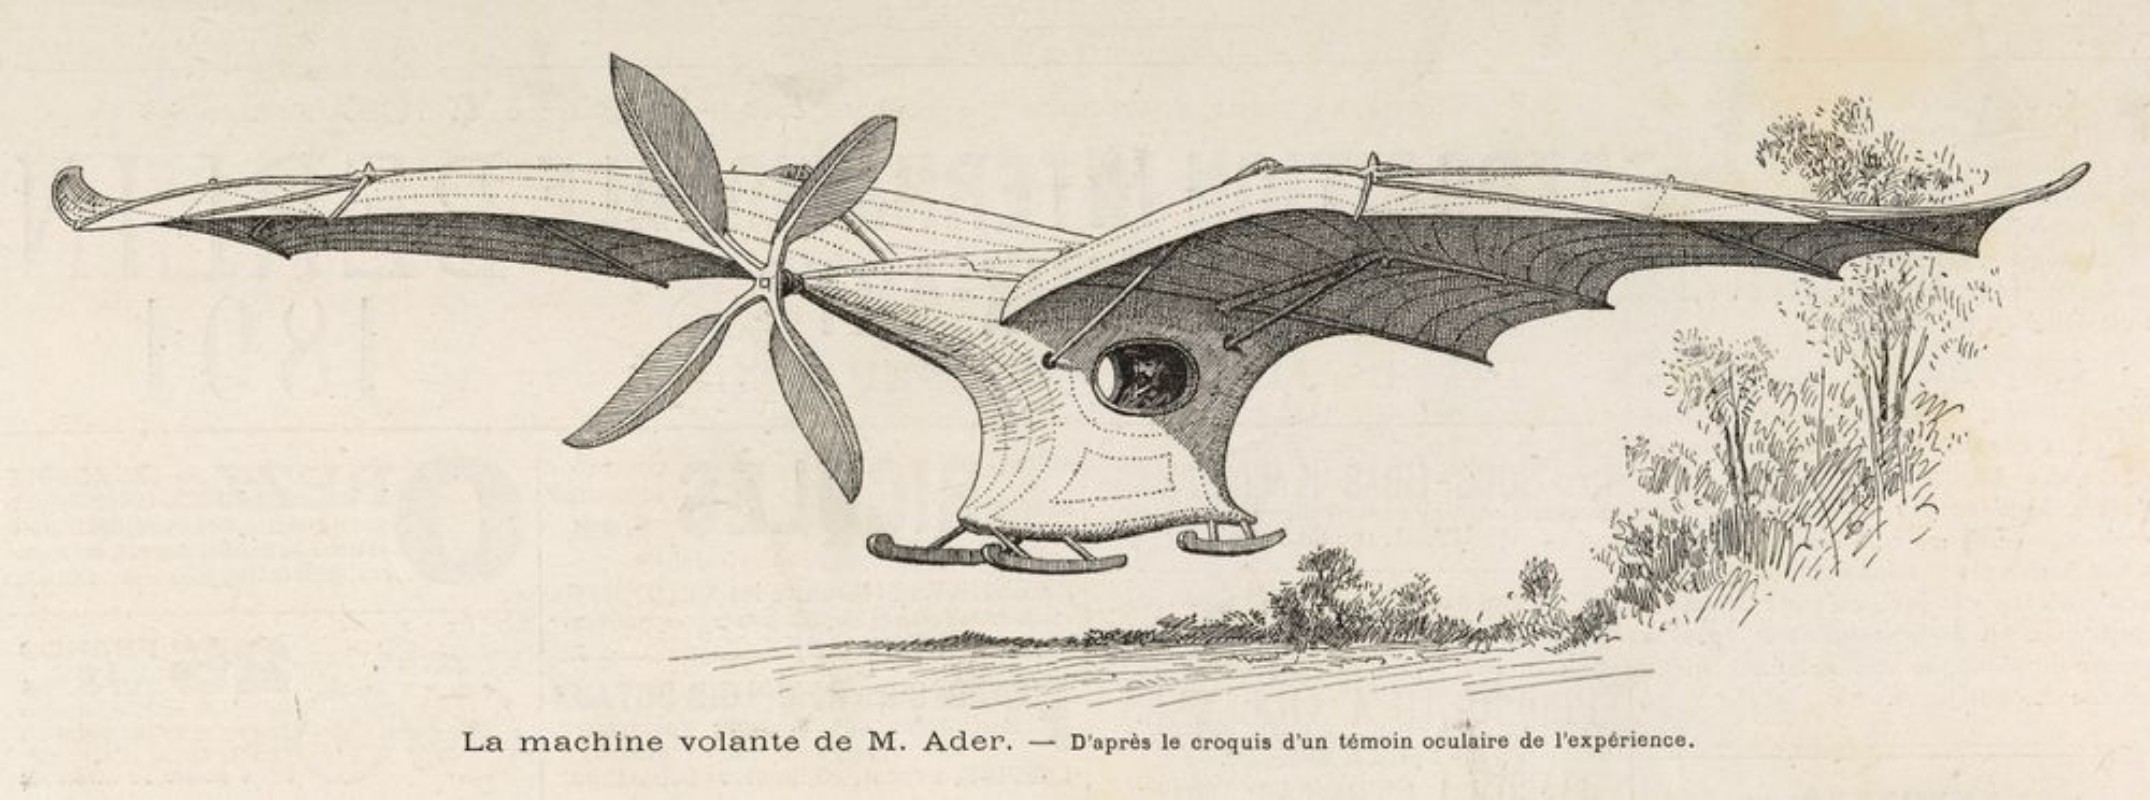 Image de Aders Eole 1891 Date 1891